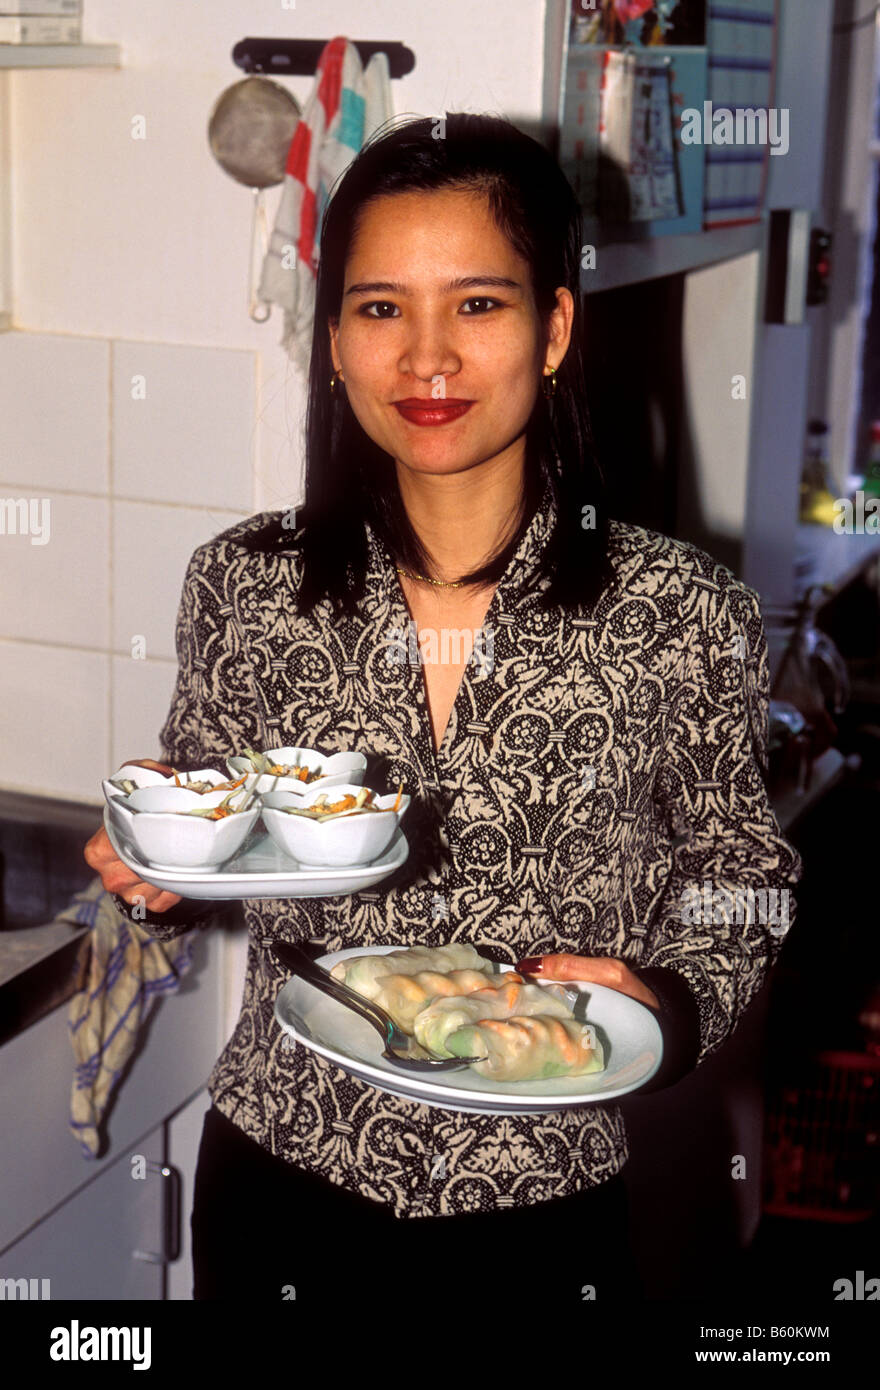 Vietnamienne, femme adulte, Cook, cuisine, chef, serveuse, restaurant vietnamien, Bruxelles, Bruxelles-Capitale, Belgique, Europe Banque D'Images